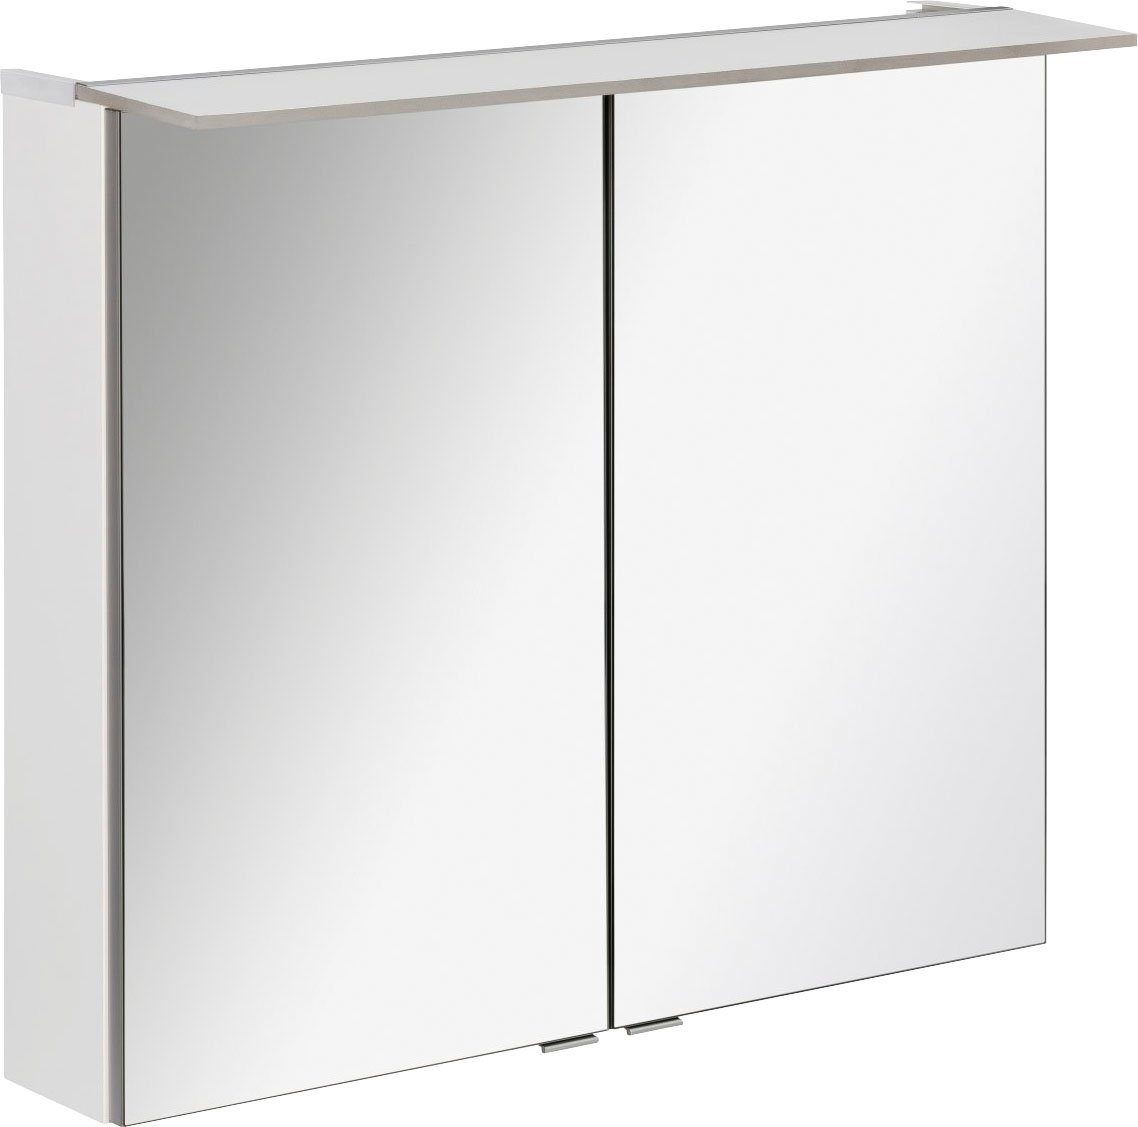 FACKELMANN Spiegelkast Polyester 80 - wit Breedte 80 cm, met 2 deuren dubbelzijdig spiegelend